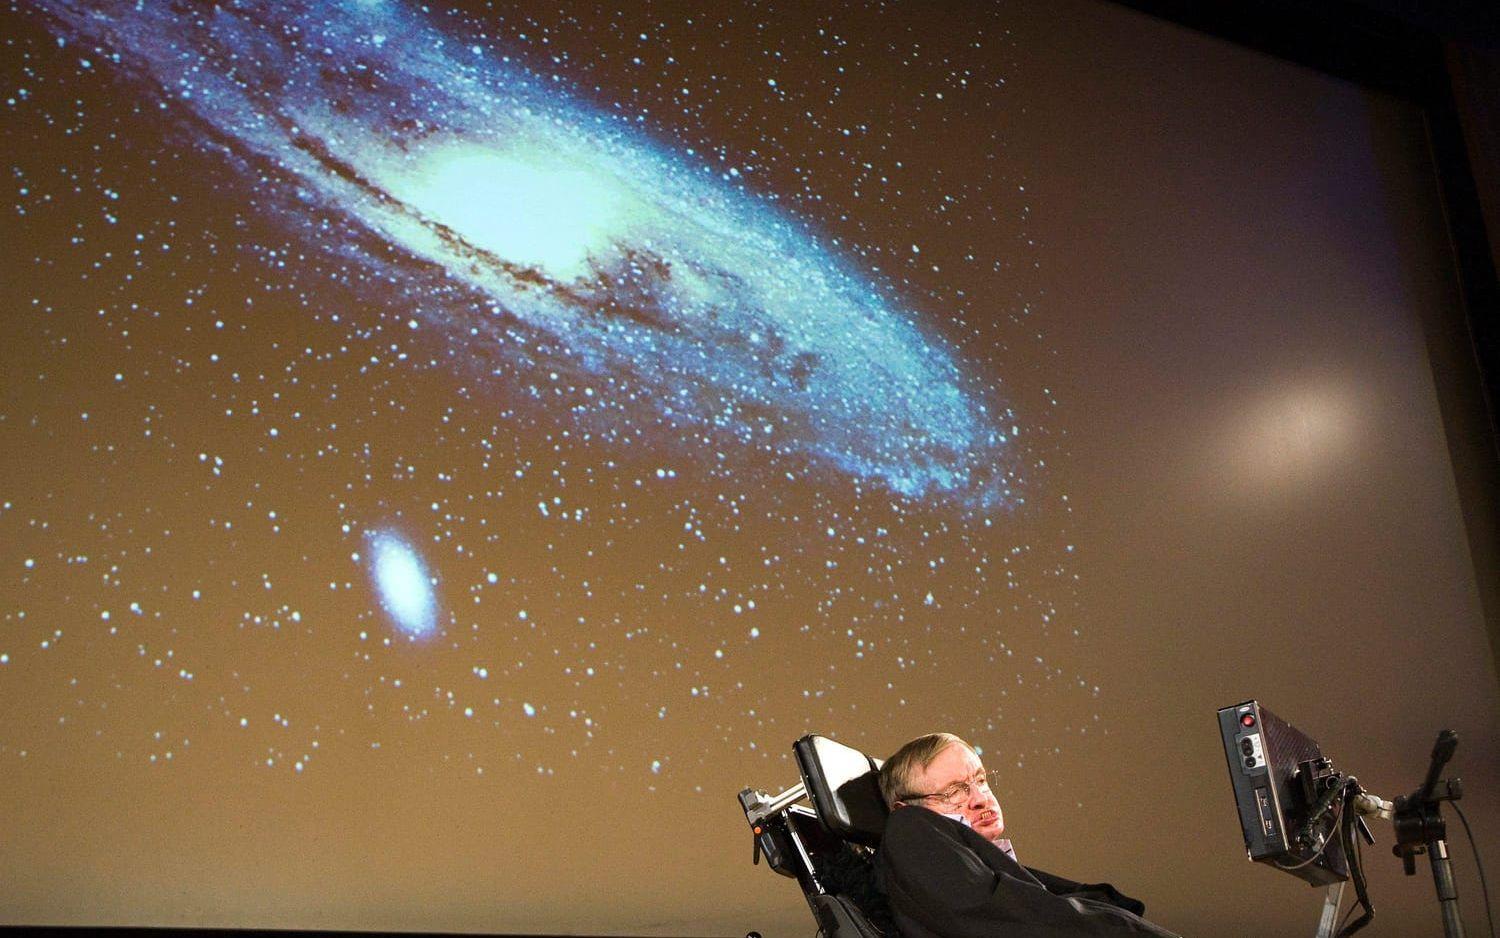 HAN TROR PÅ RYMDVARELSER. Stephen Hawking är övertygad om att det finns liv där ute i universum. ”Primitivt liv är väldigt vanligt och intelligent liv är väldigt ovanlig” har Hawking sagt med det lilla tillägget: ”Vissa säger att det inte finns på jorden ännu”.